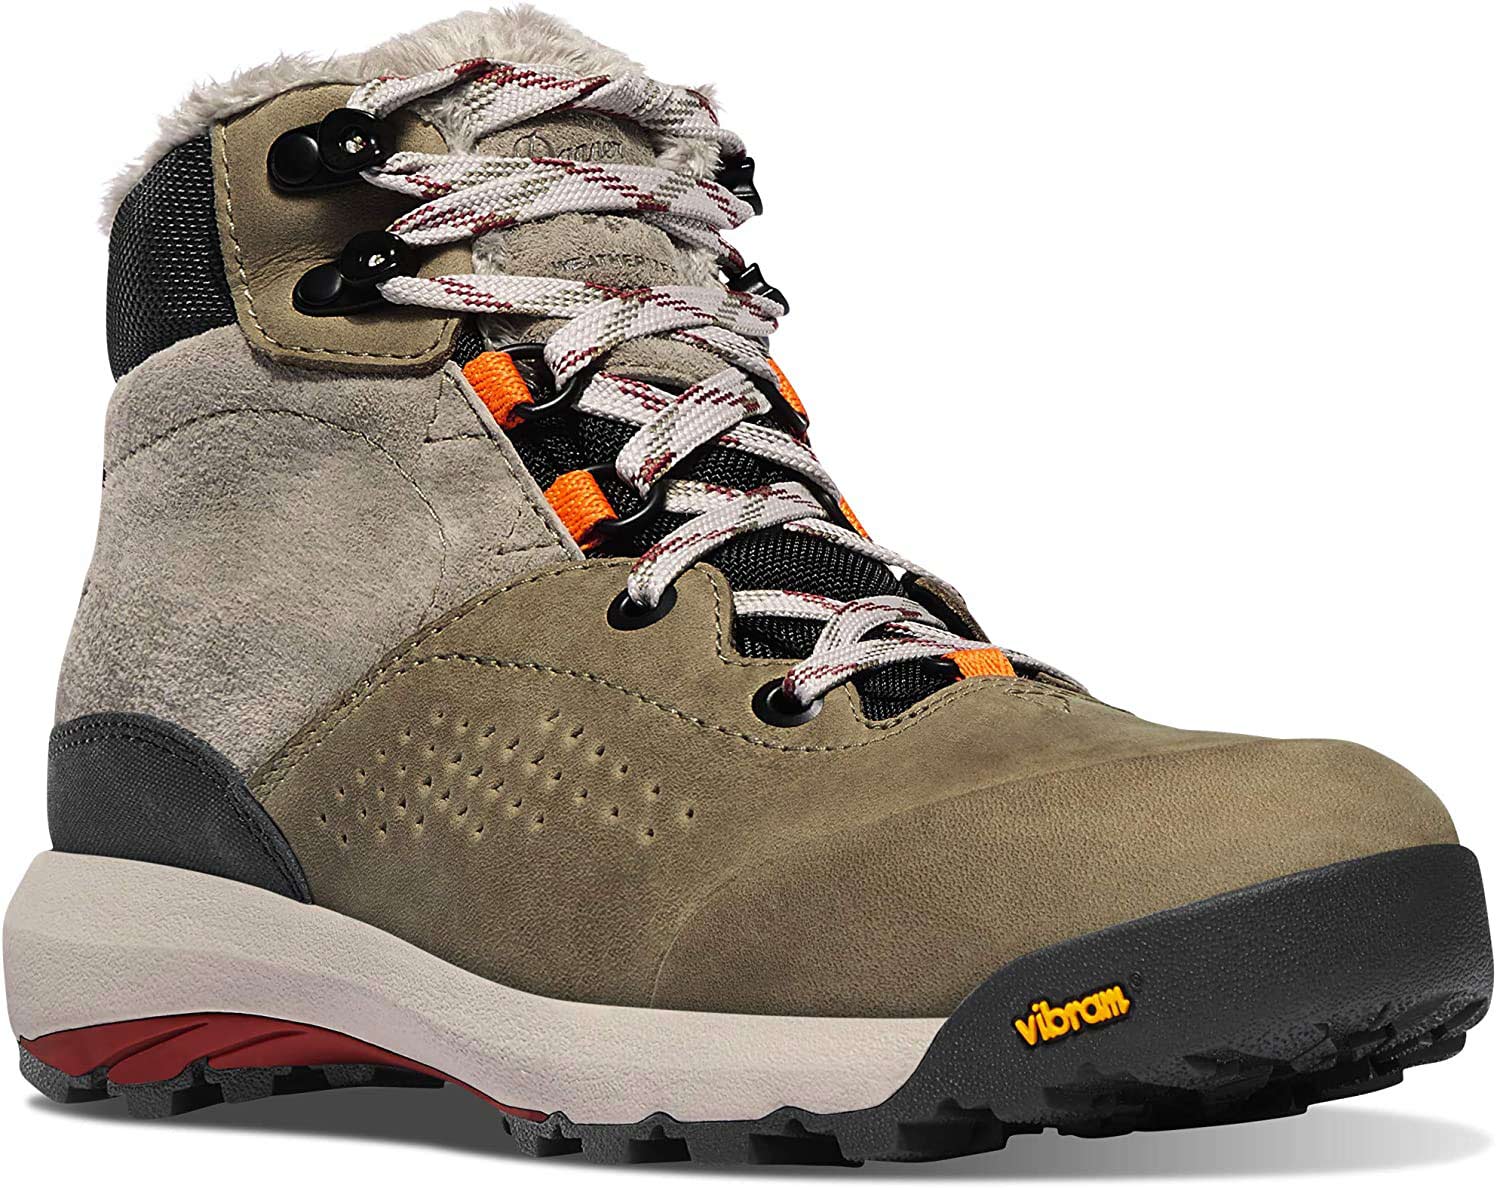 Danner Women’s Inquire Mid-Winter Waterproof Hiking Boots